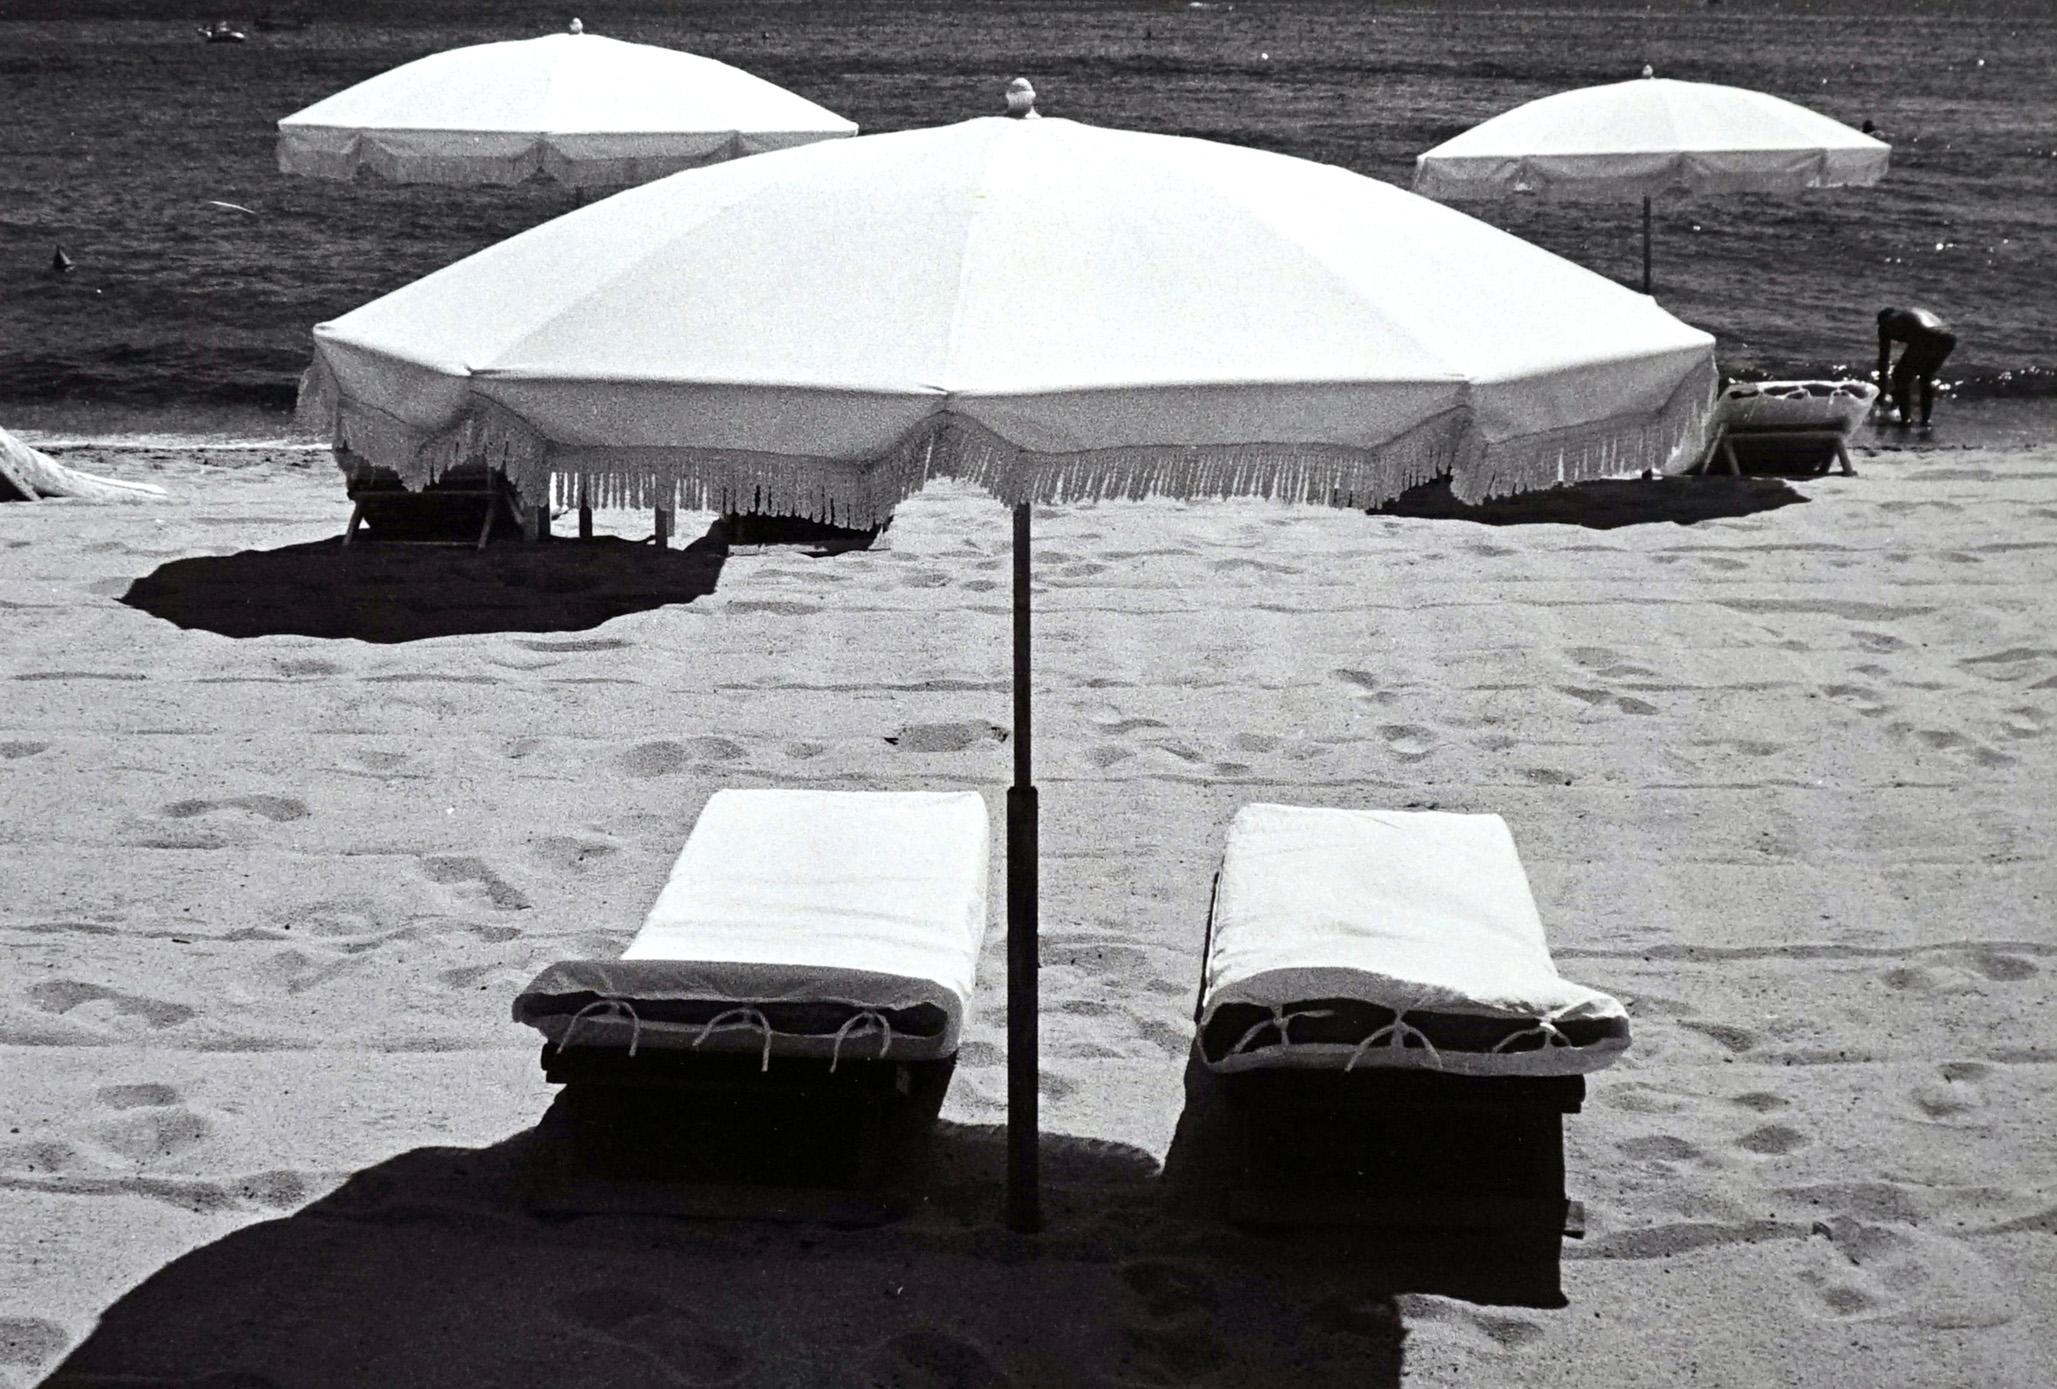 Abstract Photograph Jörg Krichbaum - Rivages - Off-Print # 1 -St Tropez - 1978 - Photographie minimaliste en noir et blanc